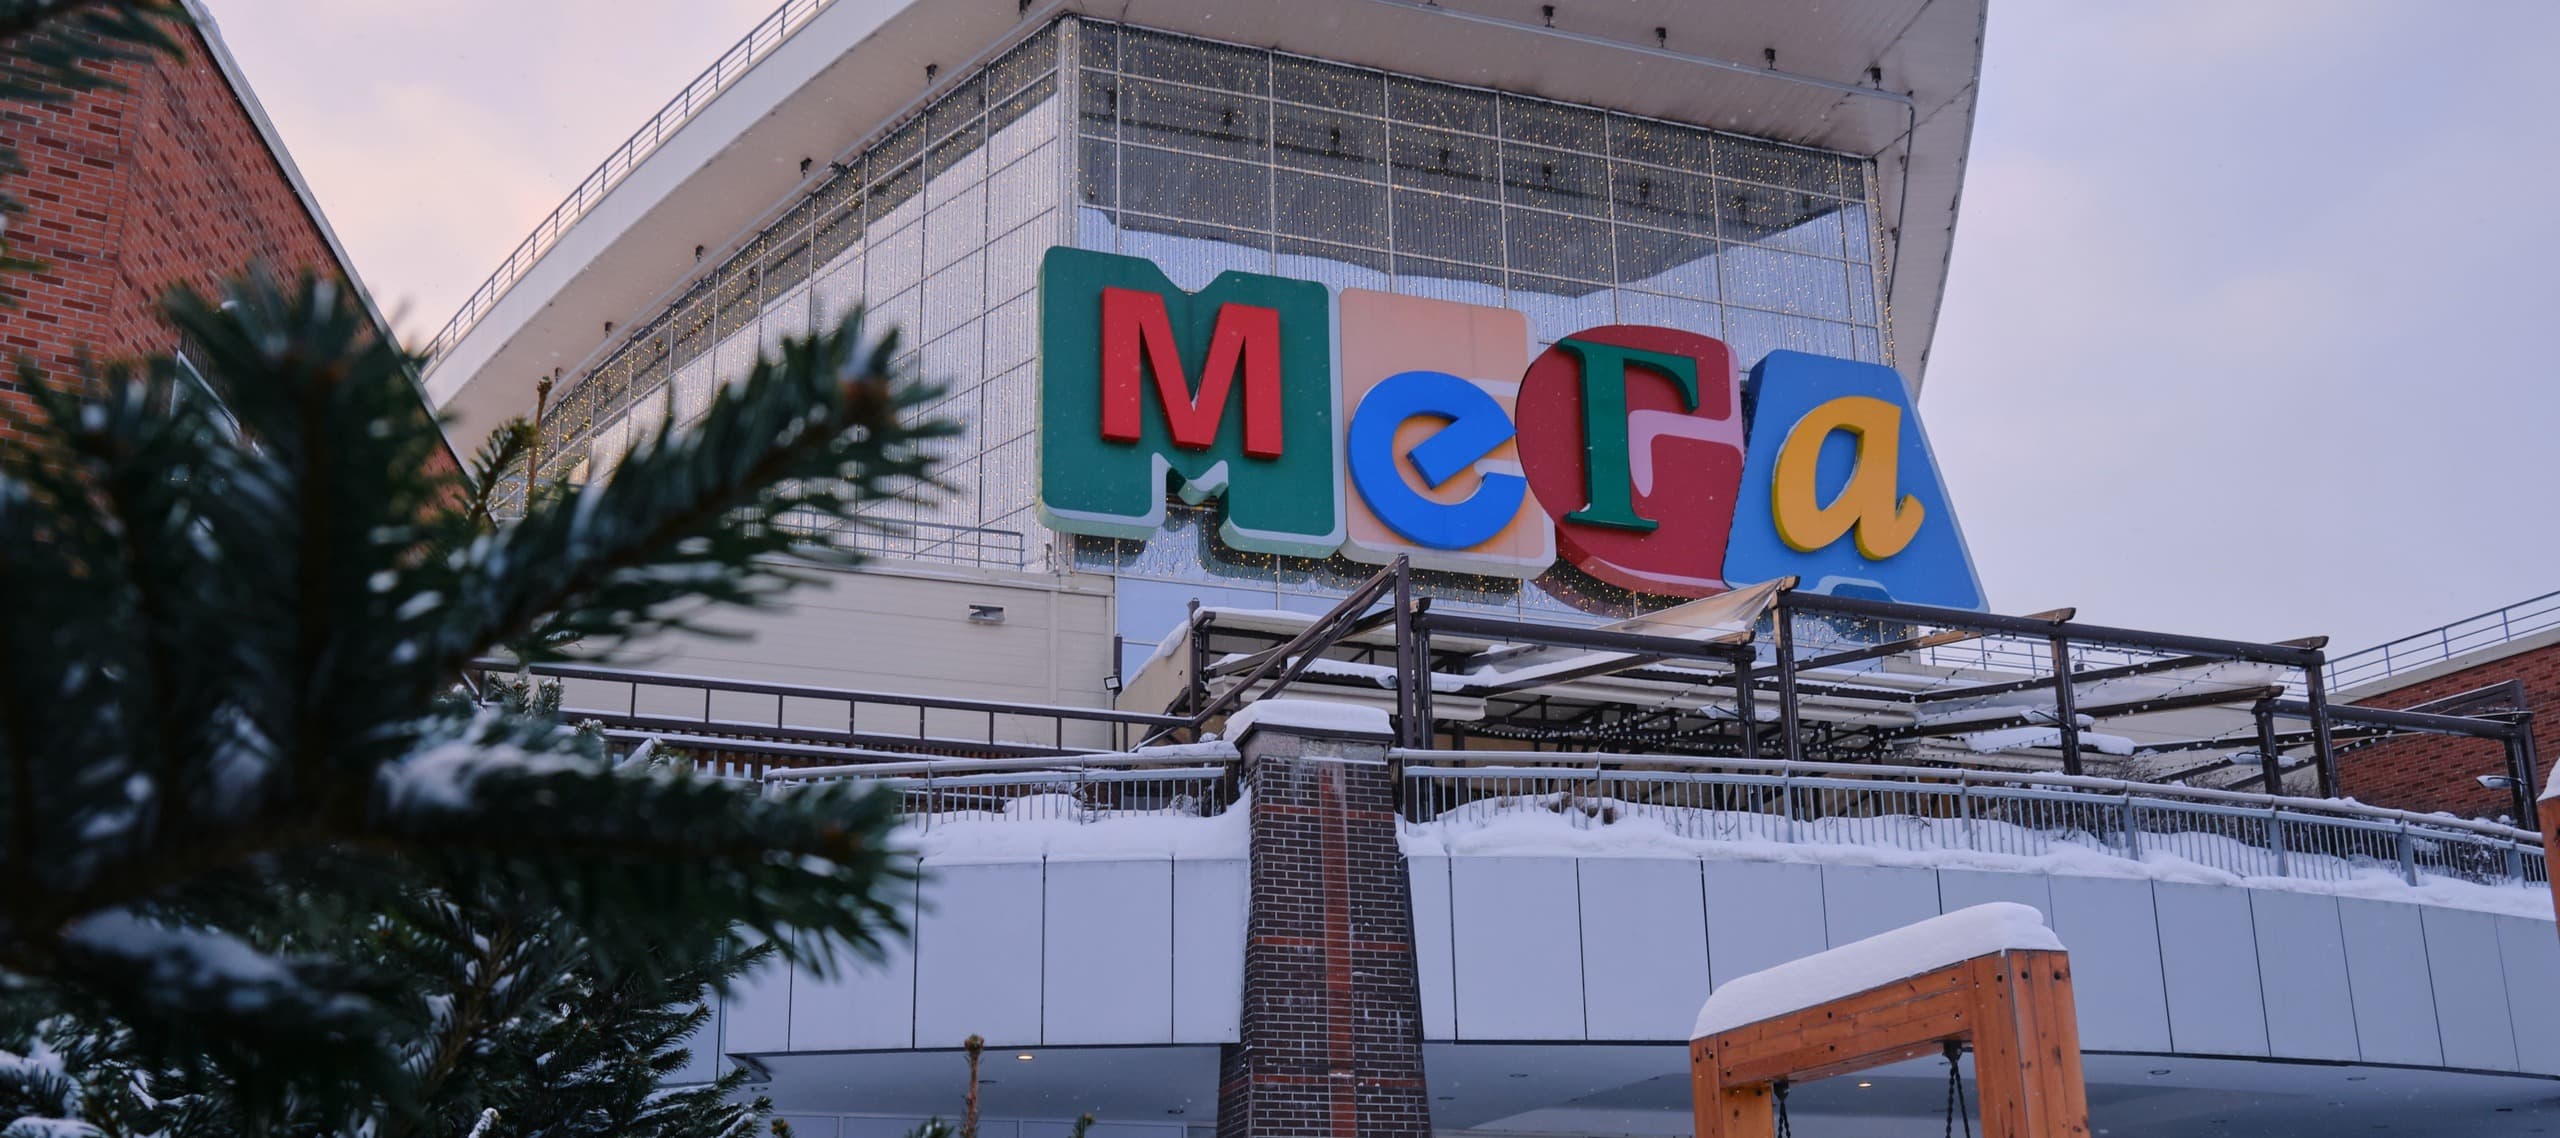 Фото новости: "«Мега Химки» открылась для посетителей  29 декабря после пожара"